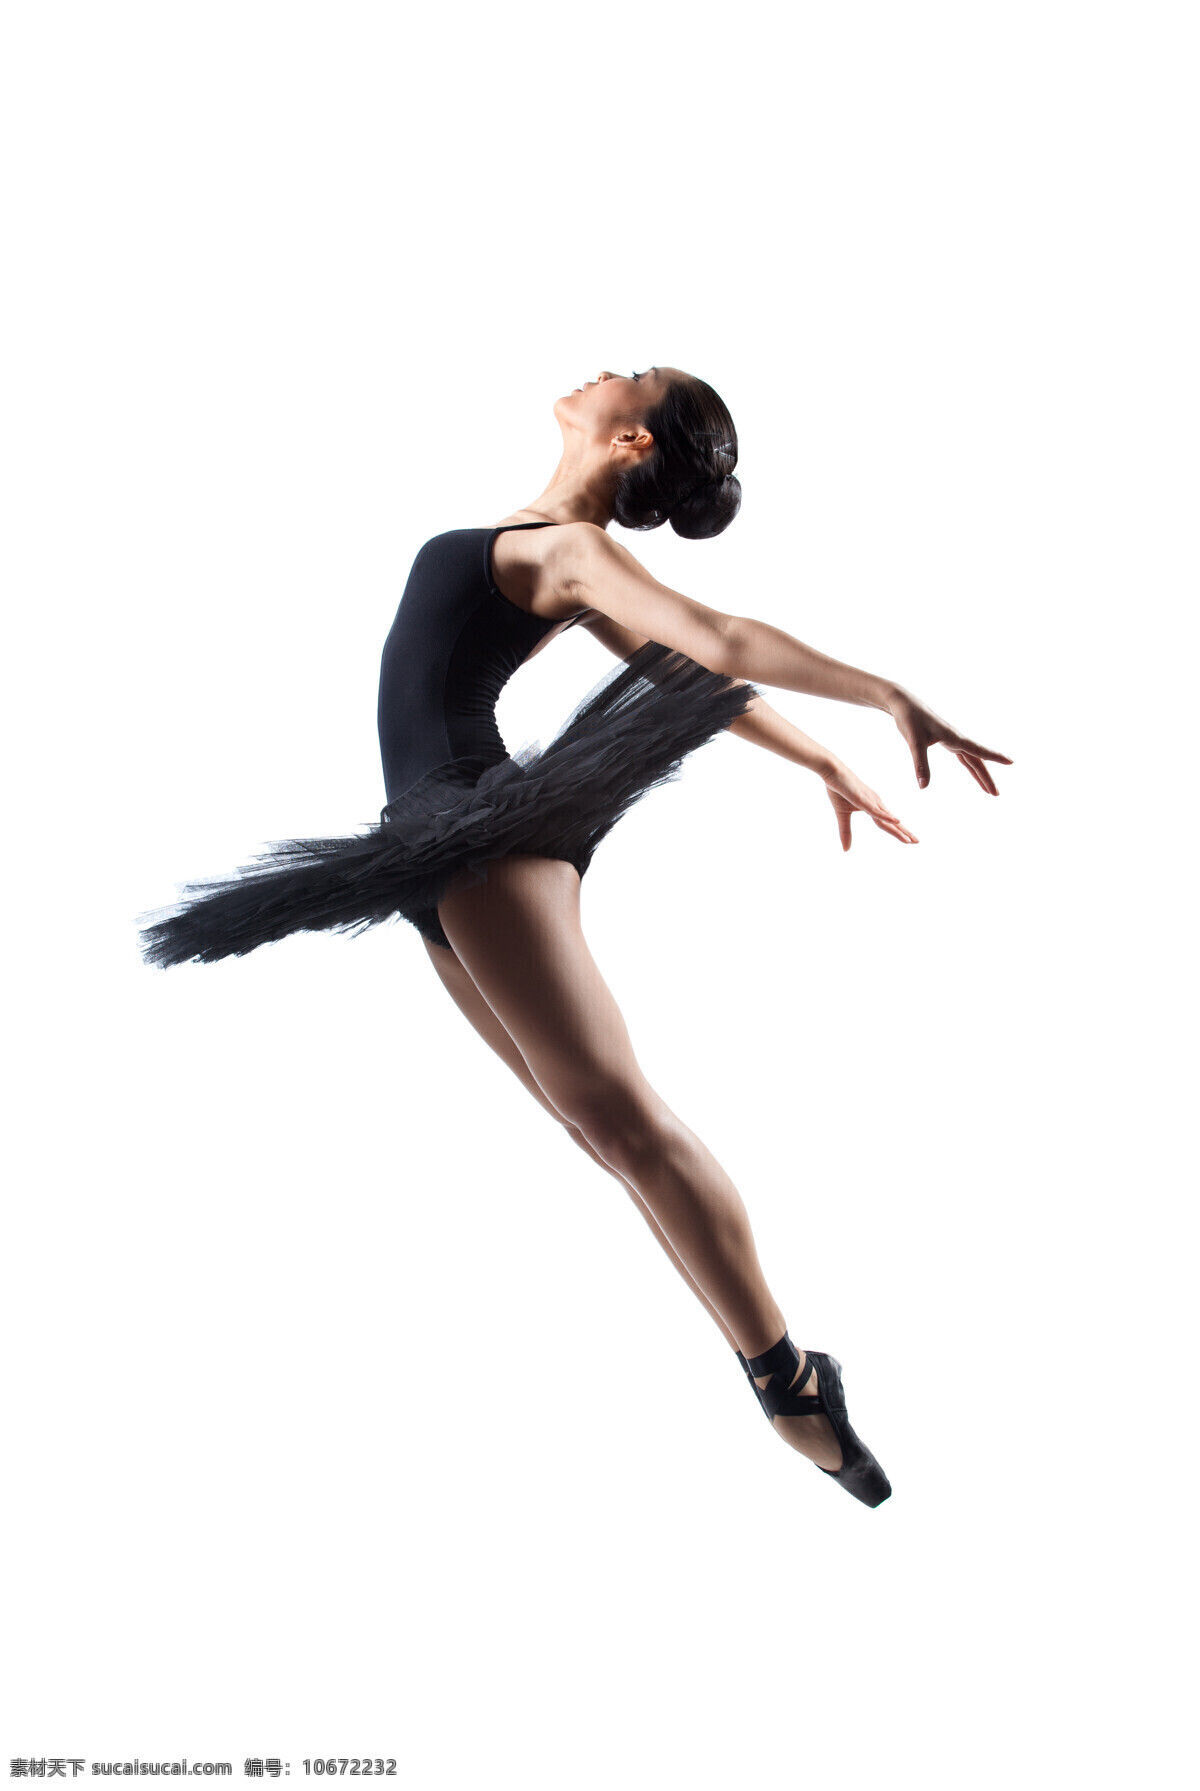 跳 芭蕾舞 女孩 舞蹈演员 跳舞 艺术 练习 培训 舞步 表演 裙子 舞鞋 人物图库 生活人物 人物图片